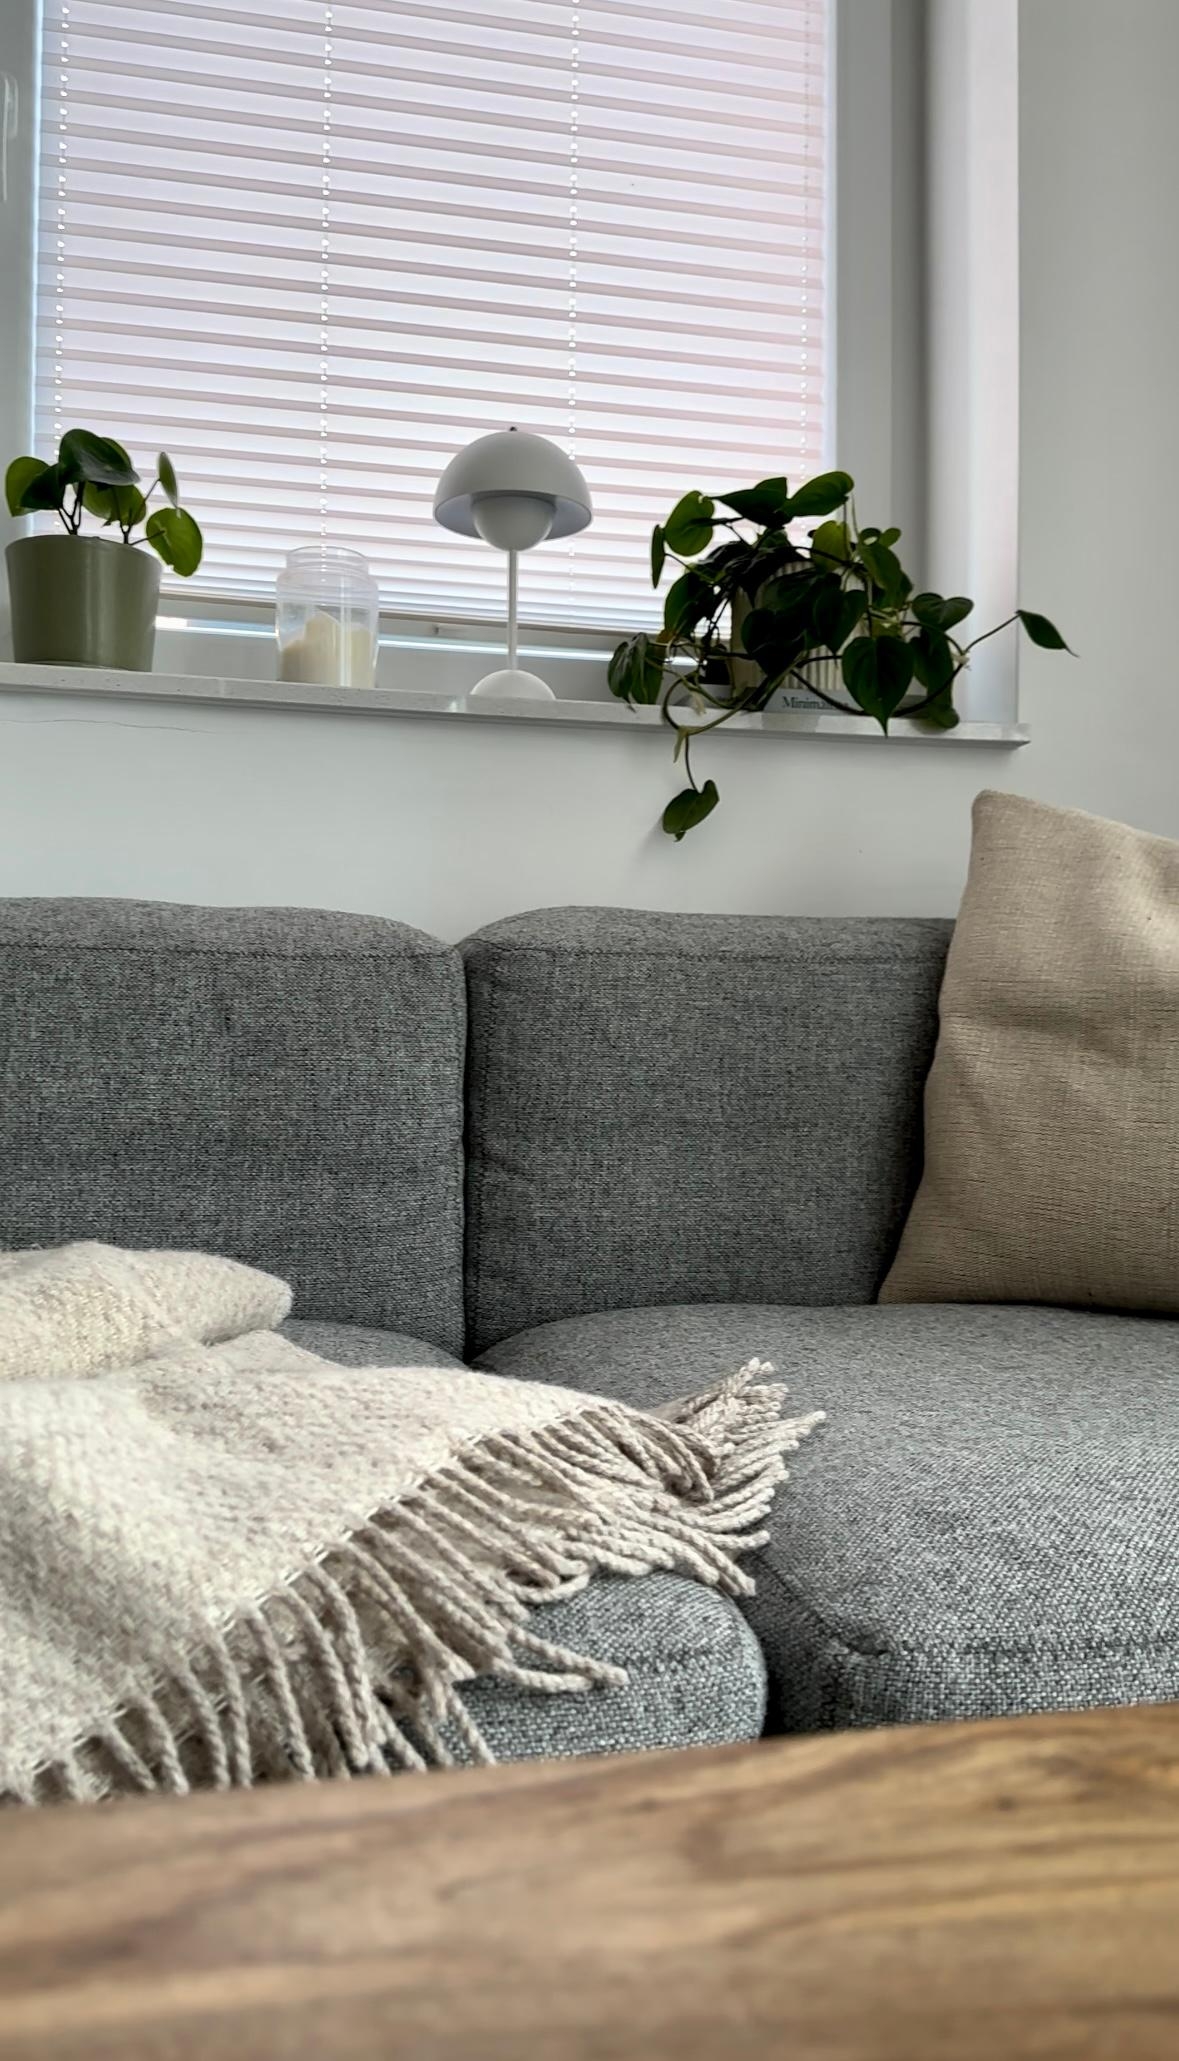 #wohnzimmer #sofa #couch #couchliebt #wolldecke #kissen #fensterbank #dekoideen #pflanzen #pflanzenliebe #lampe